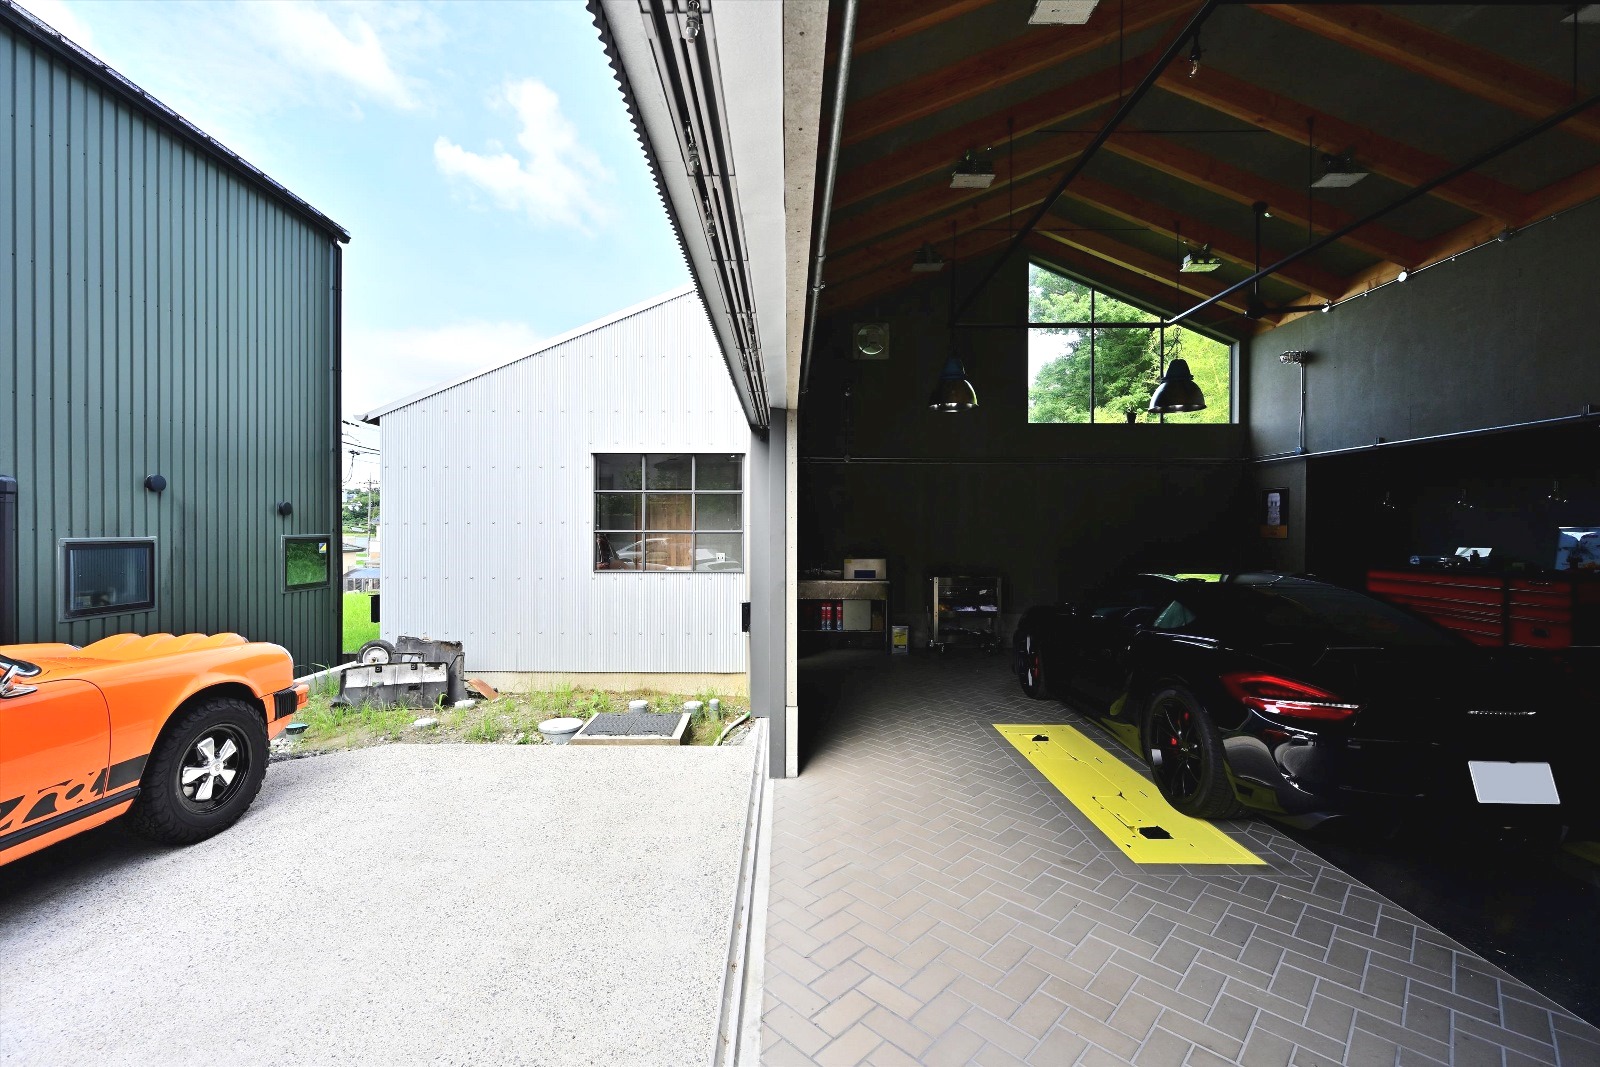 H’s garage